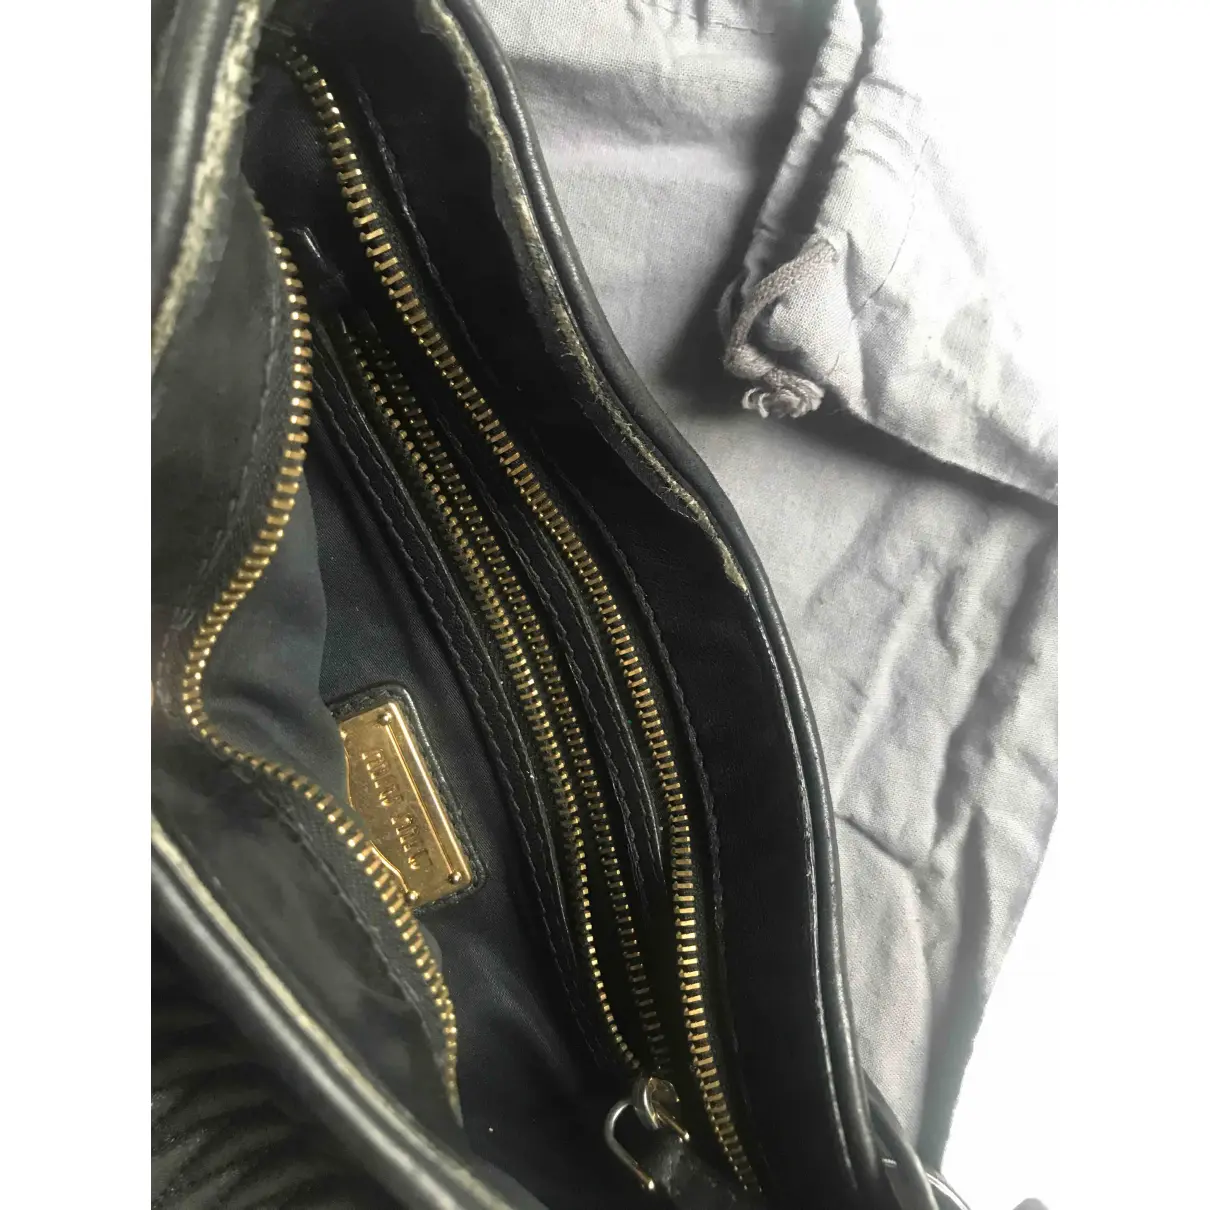 Leather clutch bag Miu Miu